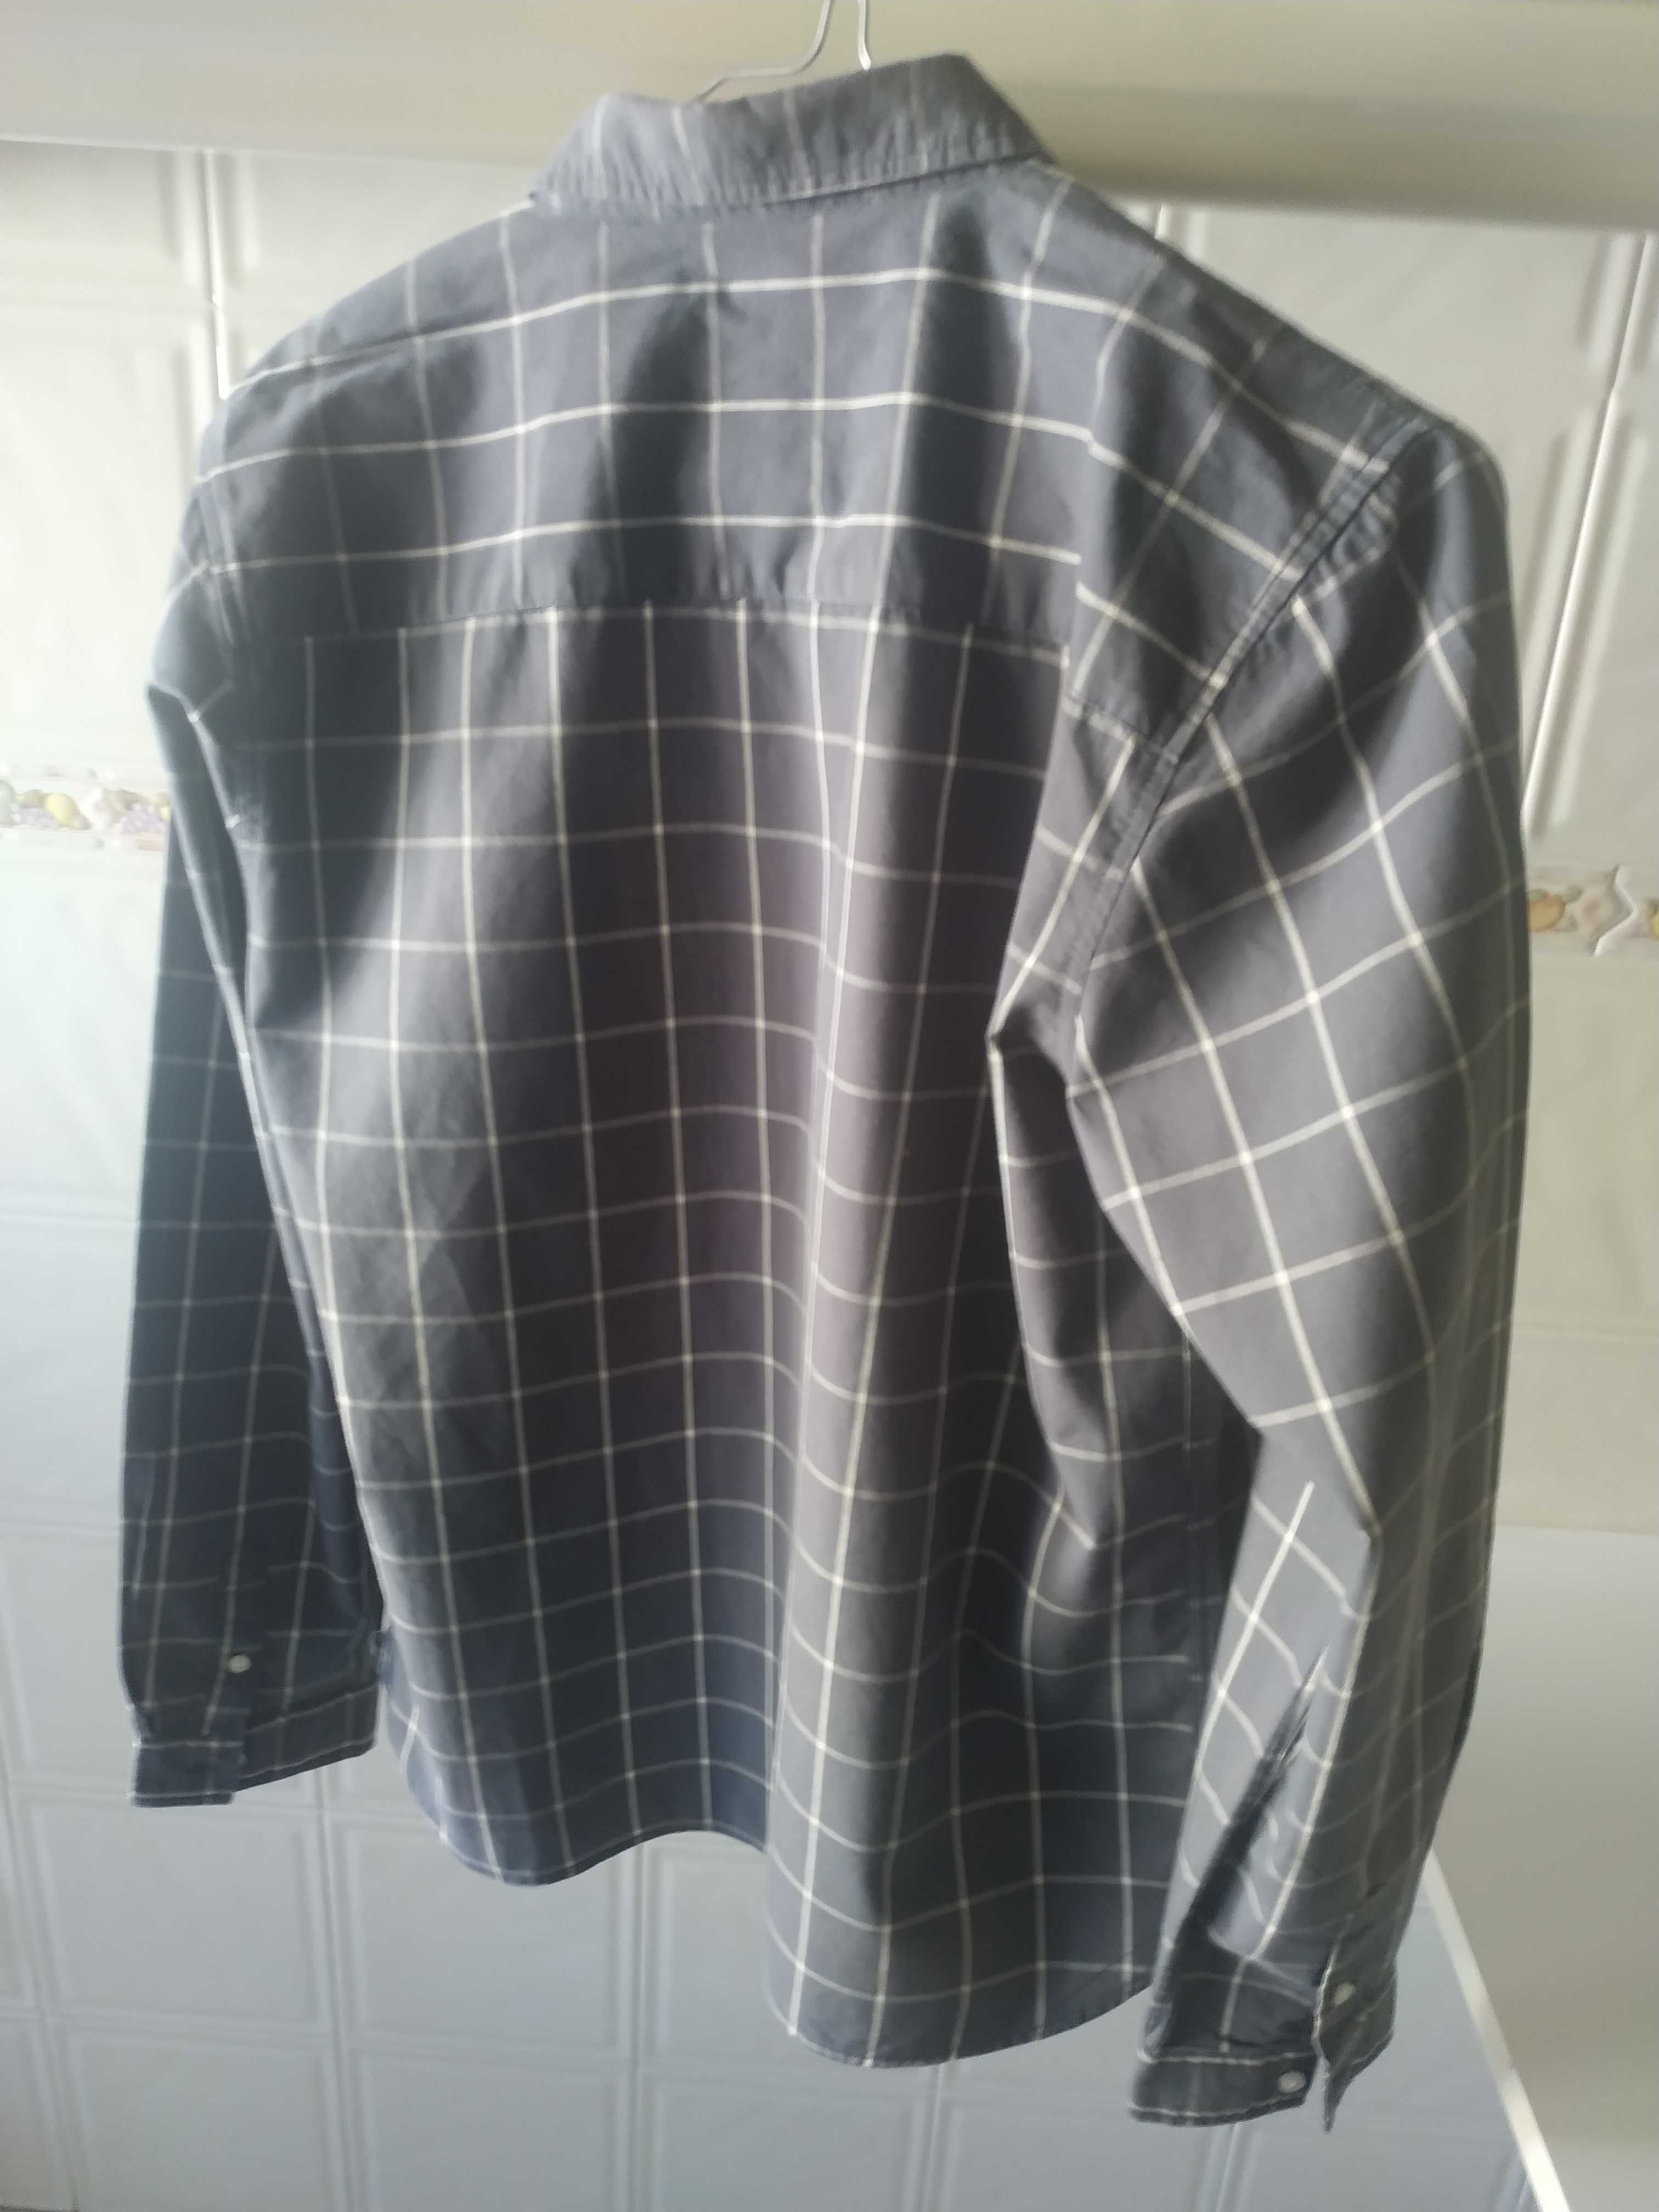 Camisa algodão xadrez cinzento, usada com pouco uso - 14-15 anos